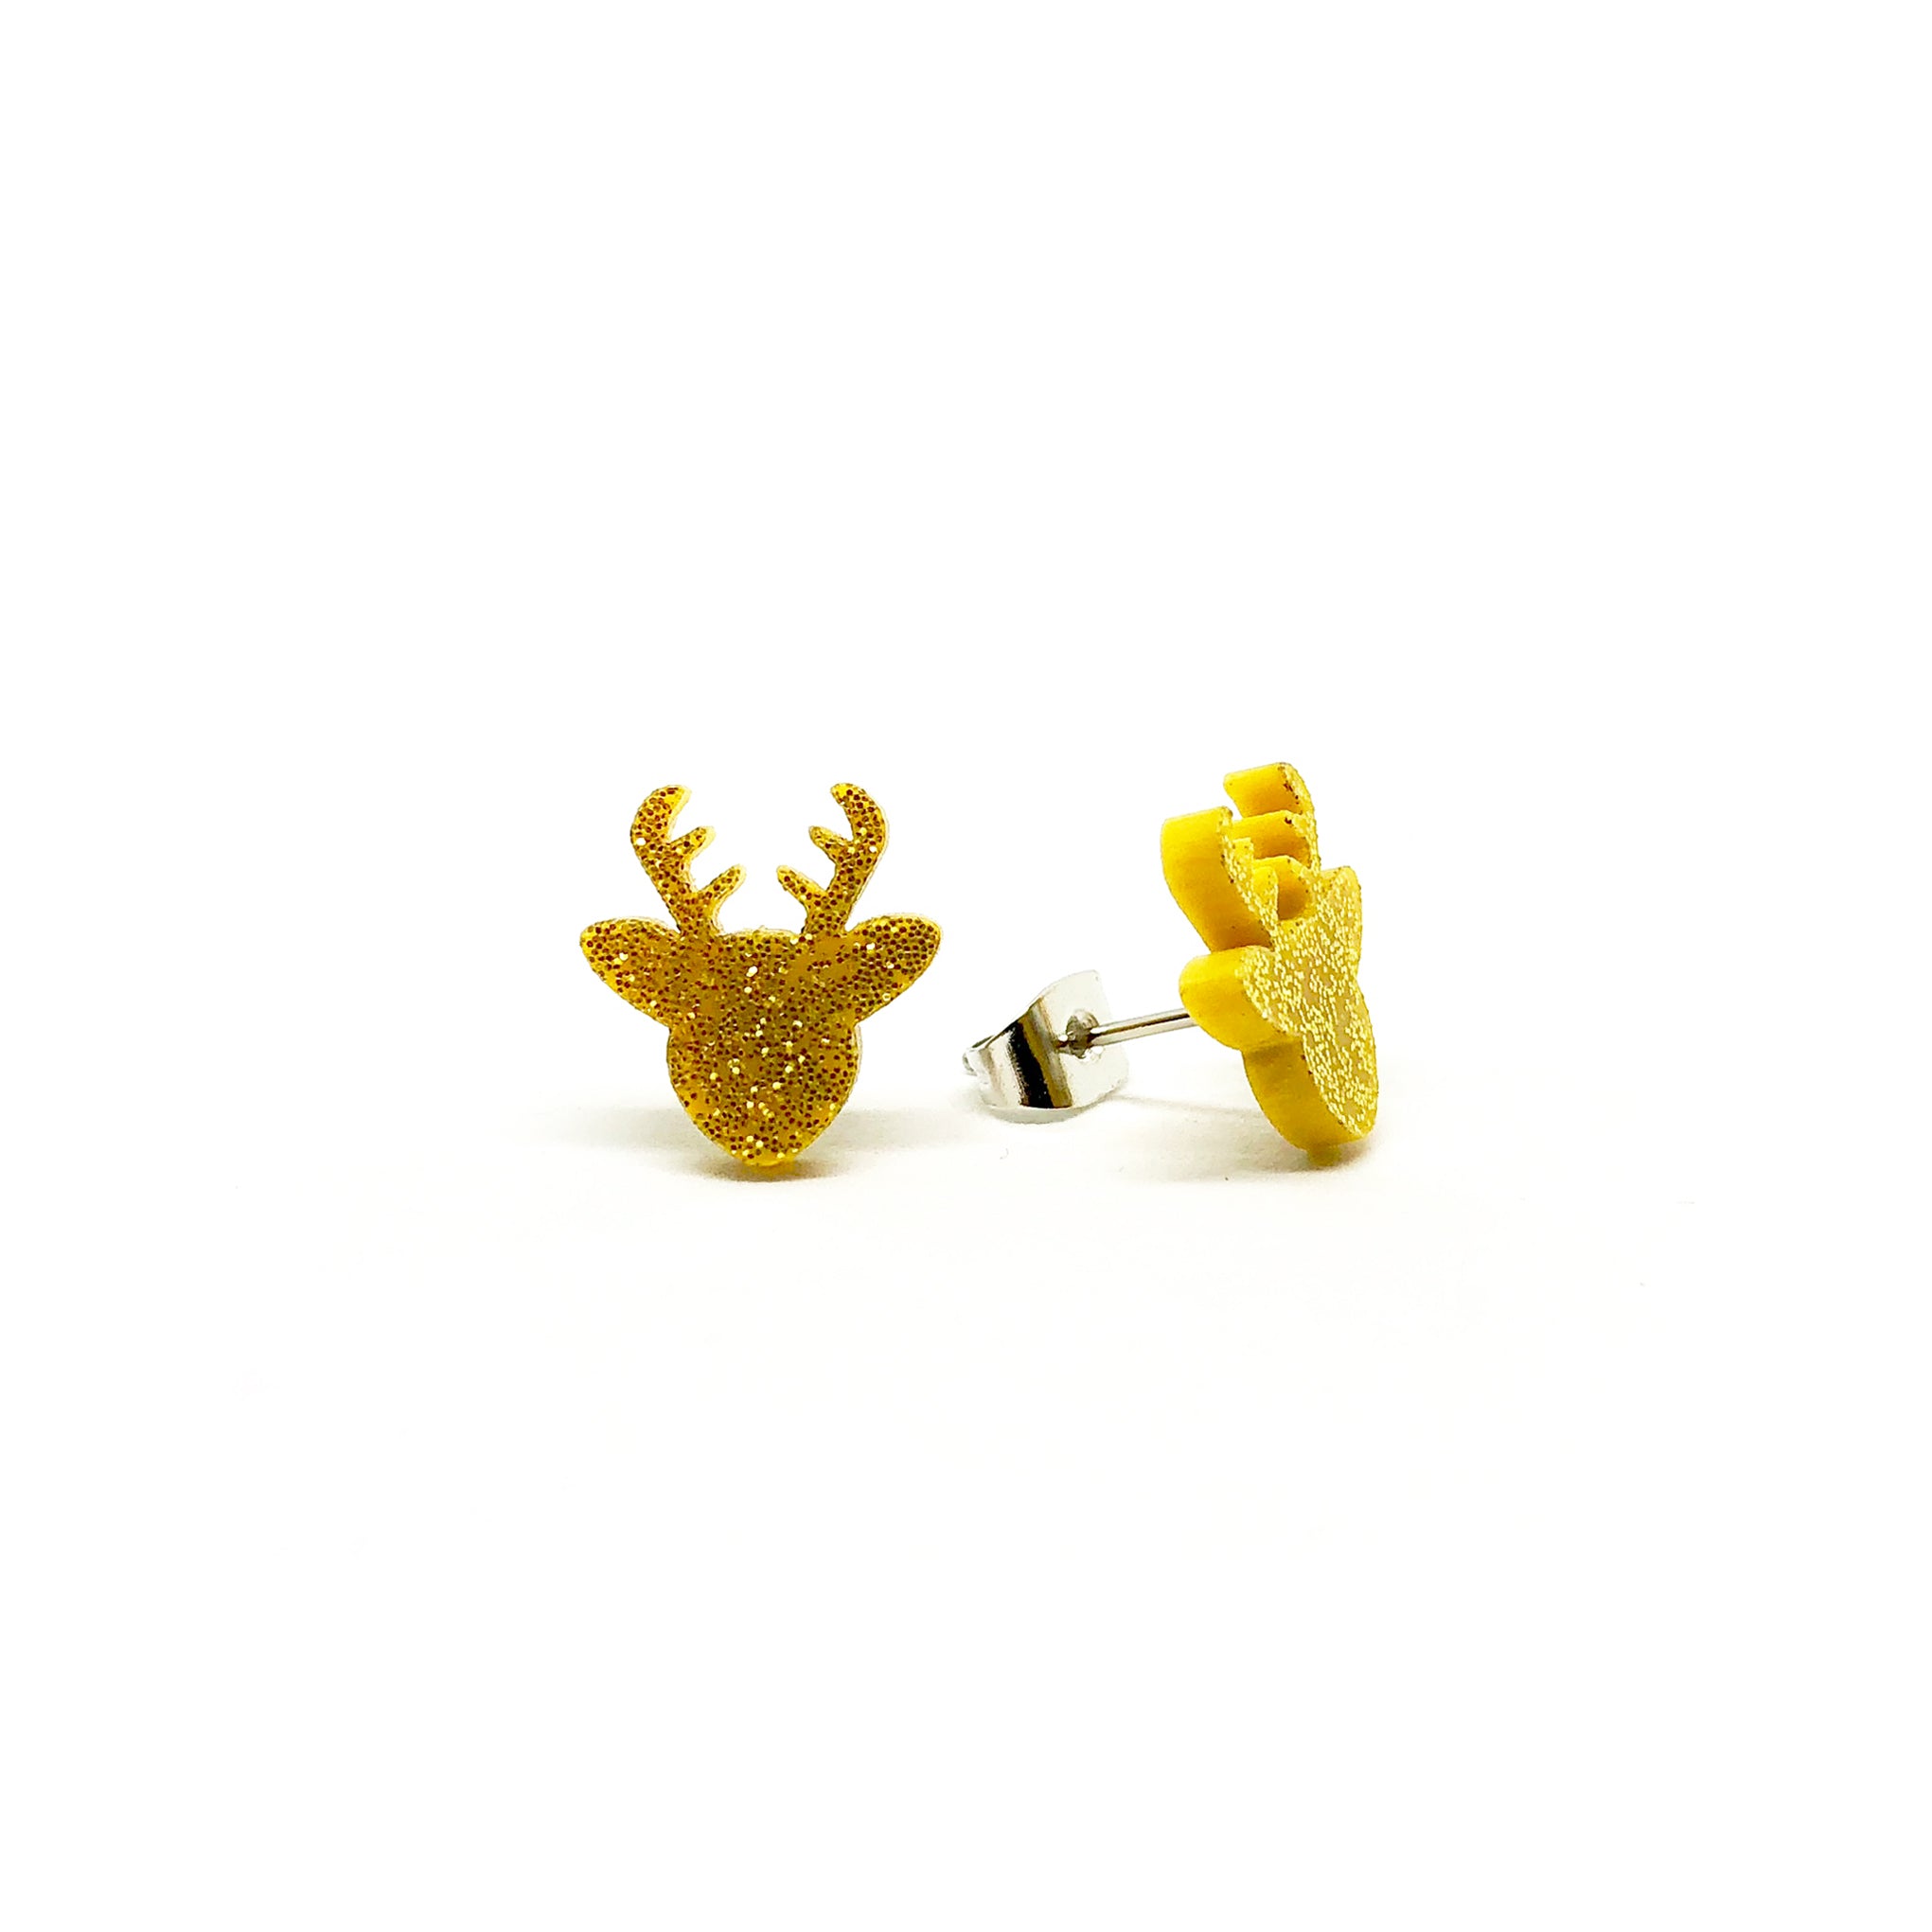 Gold Glitter Deer Laser Cut Acrylic Earrings - LM